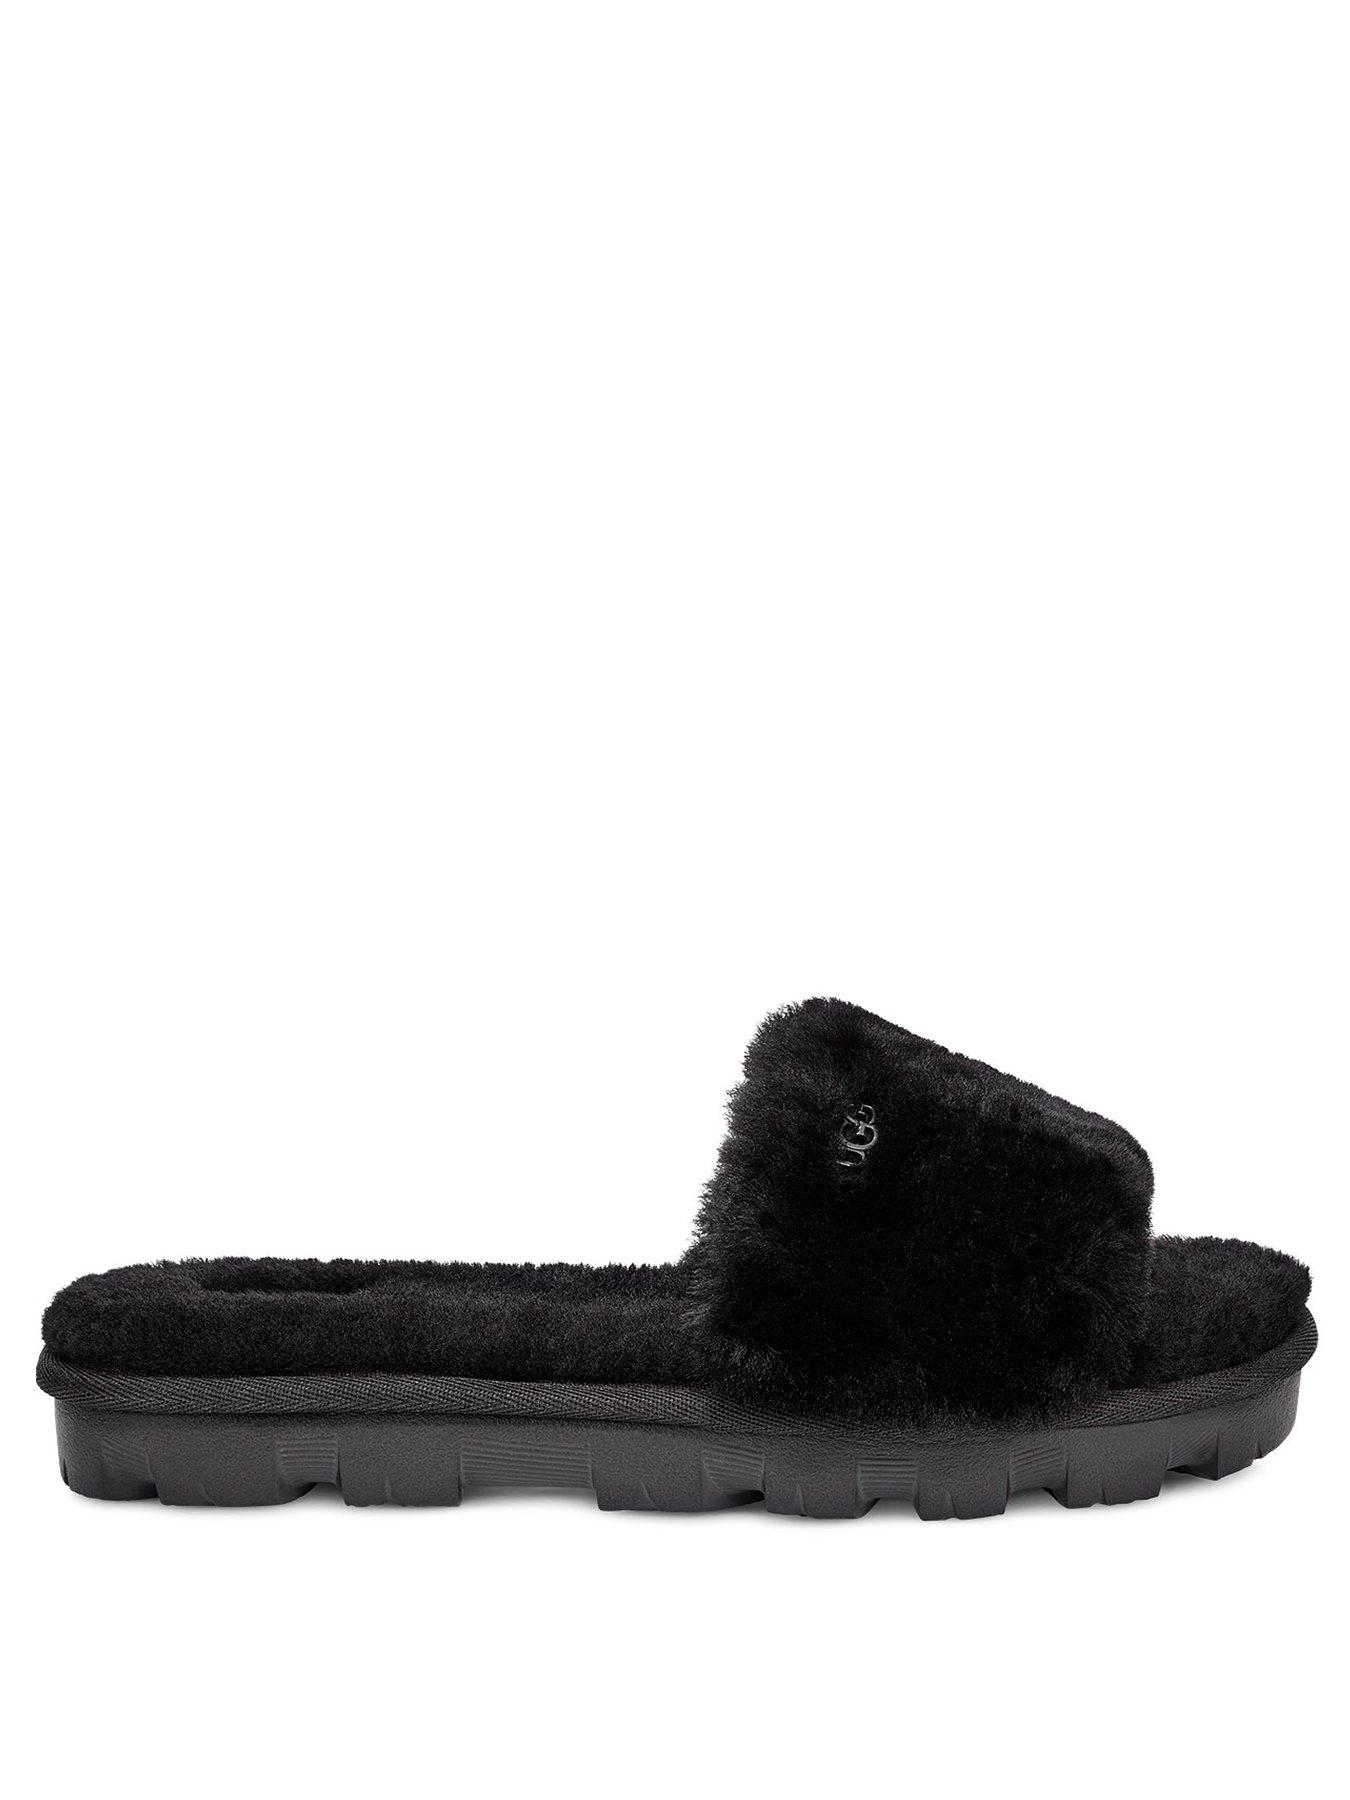 ugg slippers in black